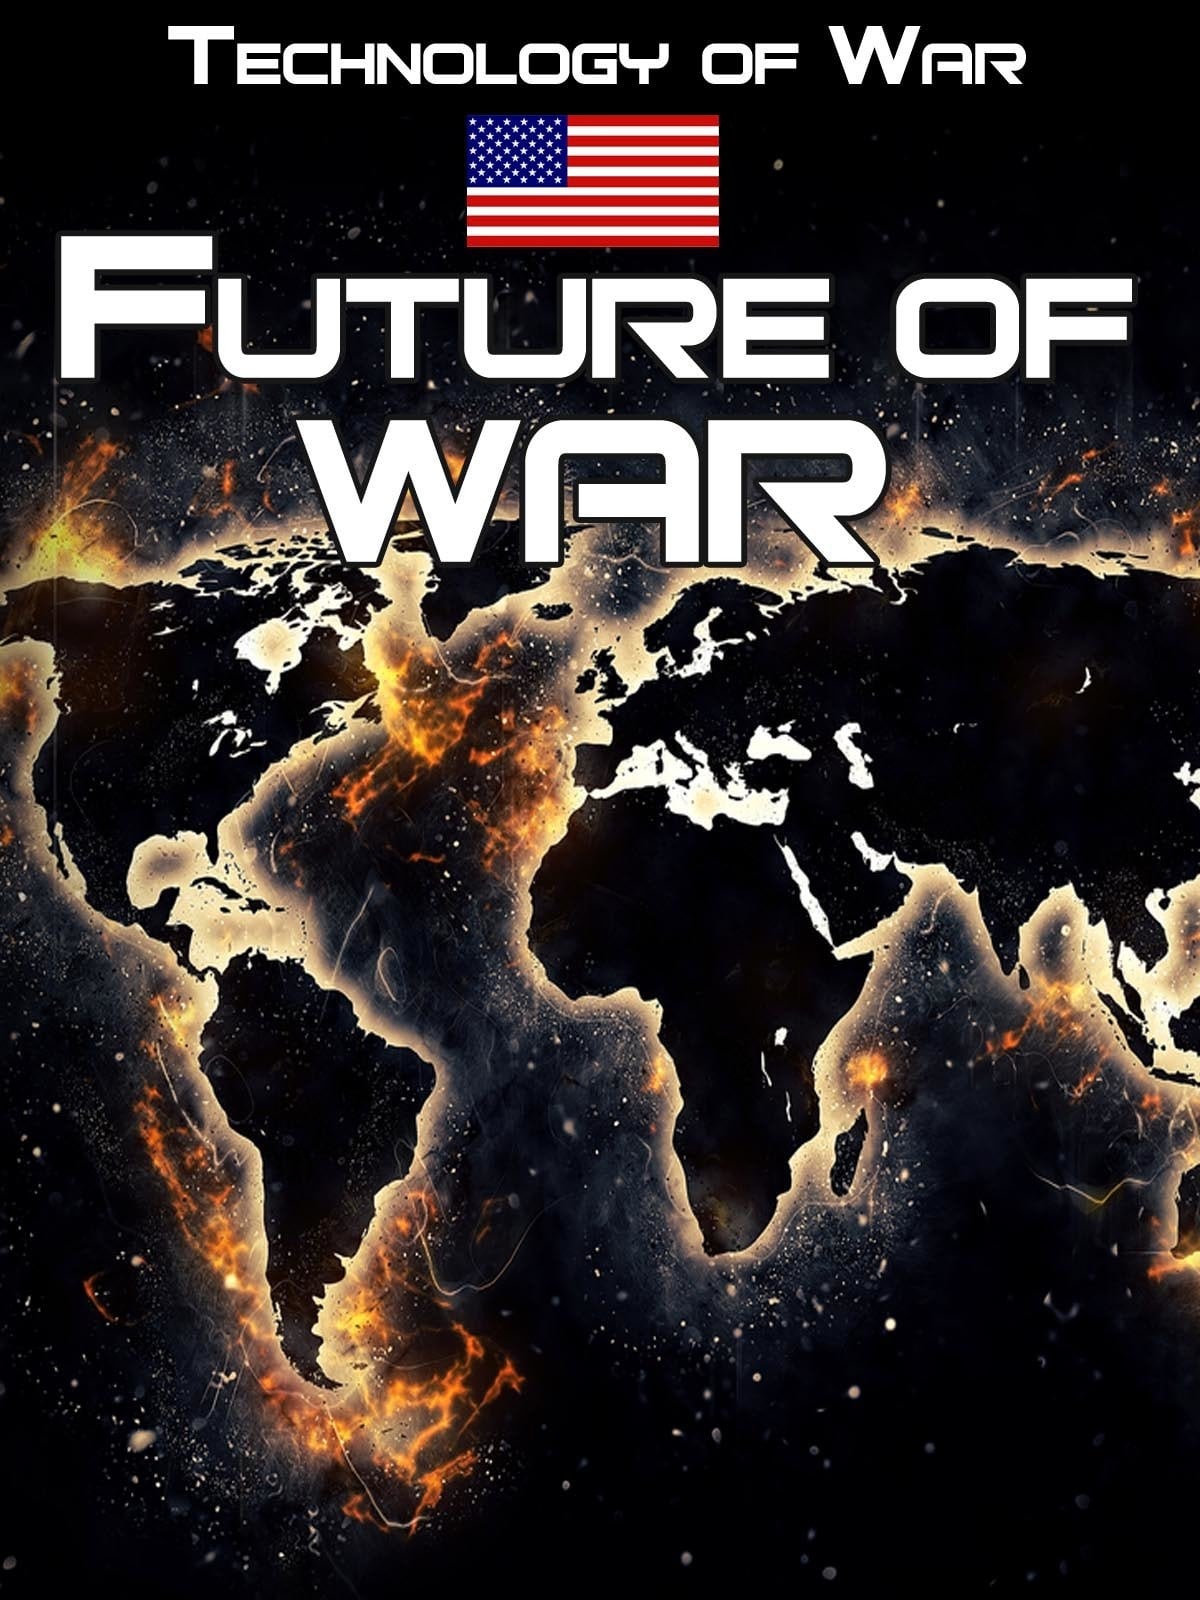 Technology of War: The Future of War